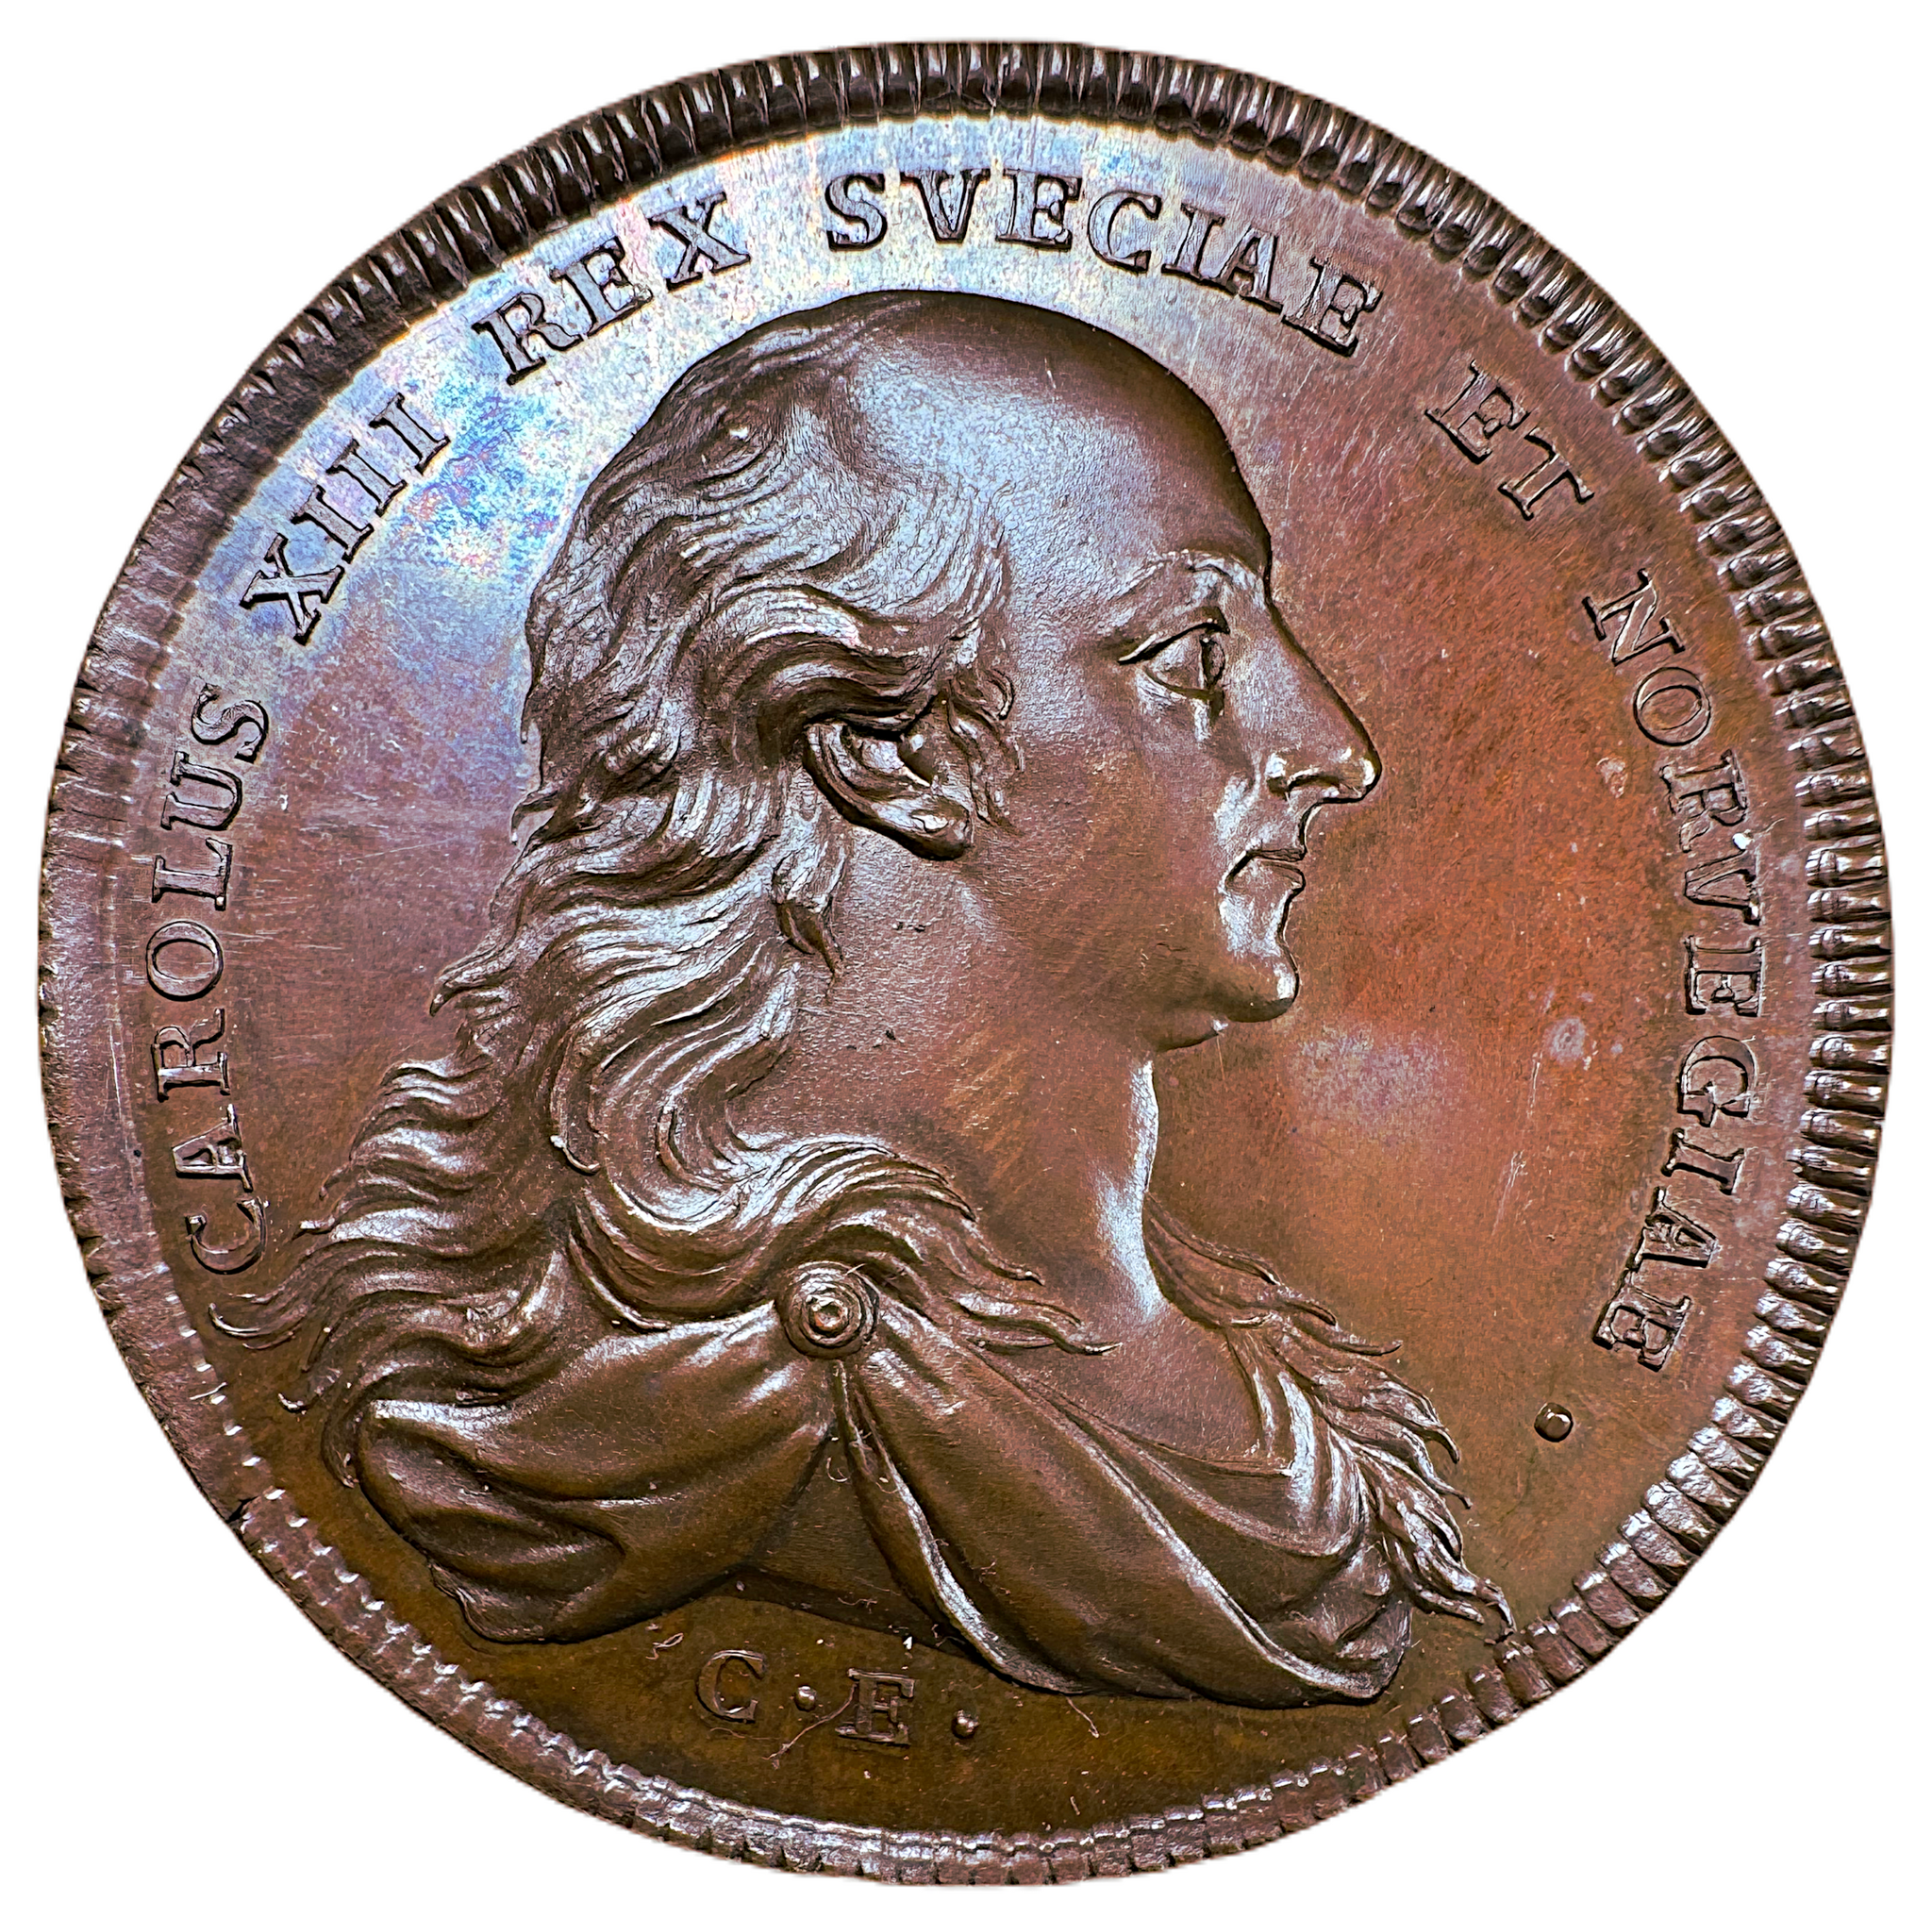 Karl XIII - Sveriges och Norges förening 1814 av Carl Enhörning - Ett underbart exemplar - RR